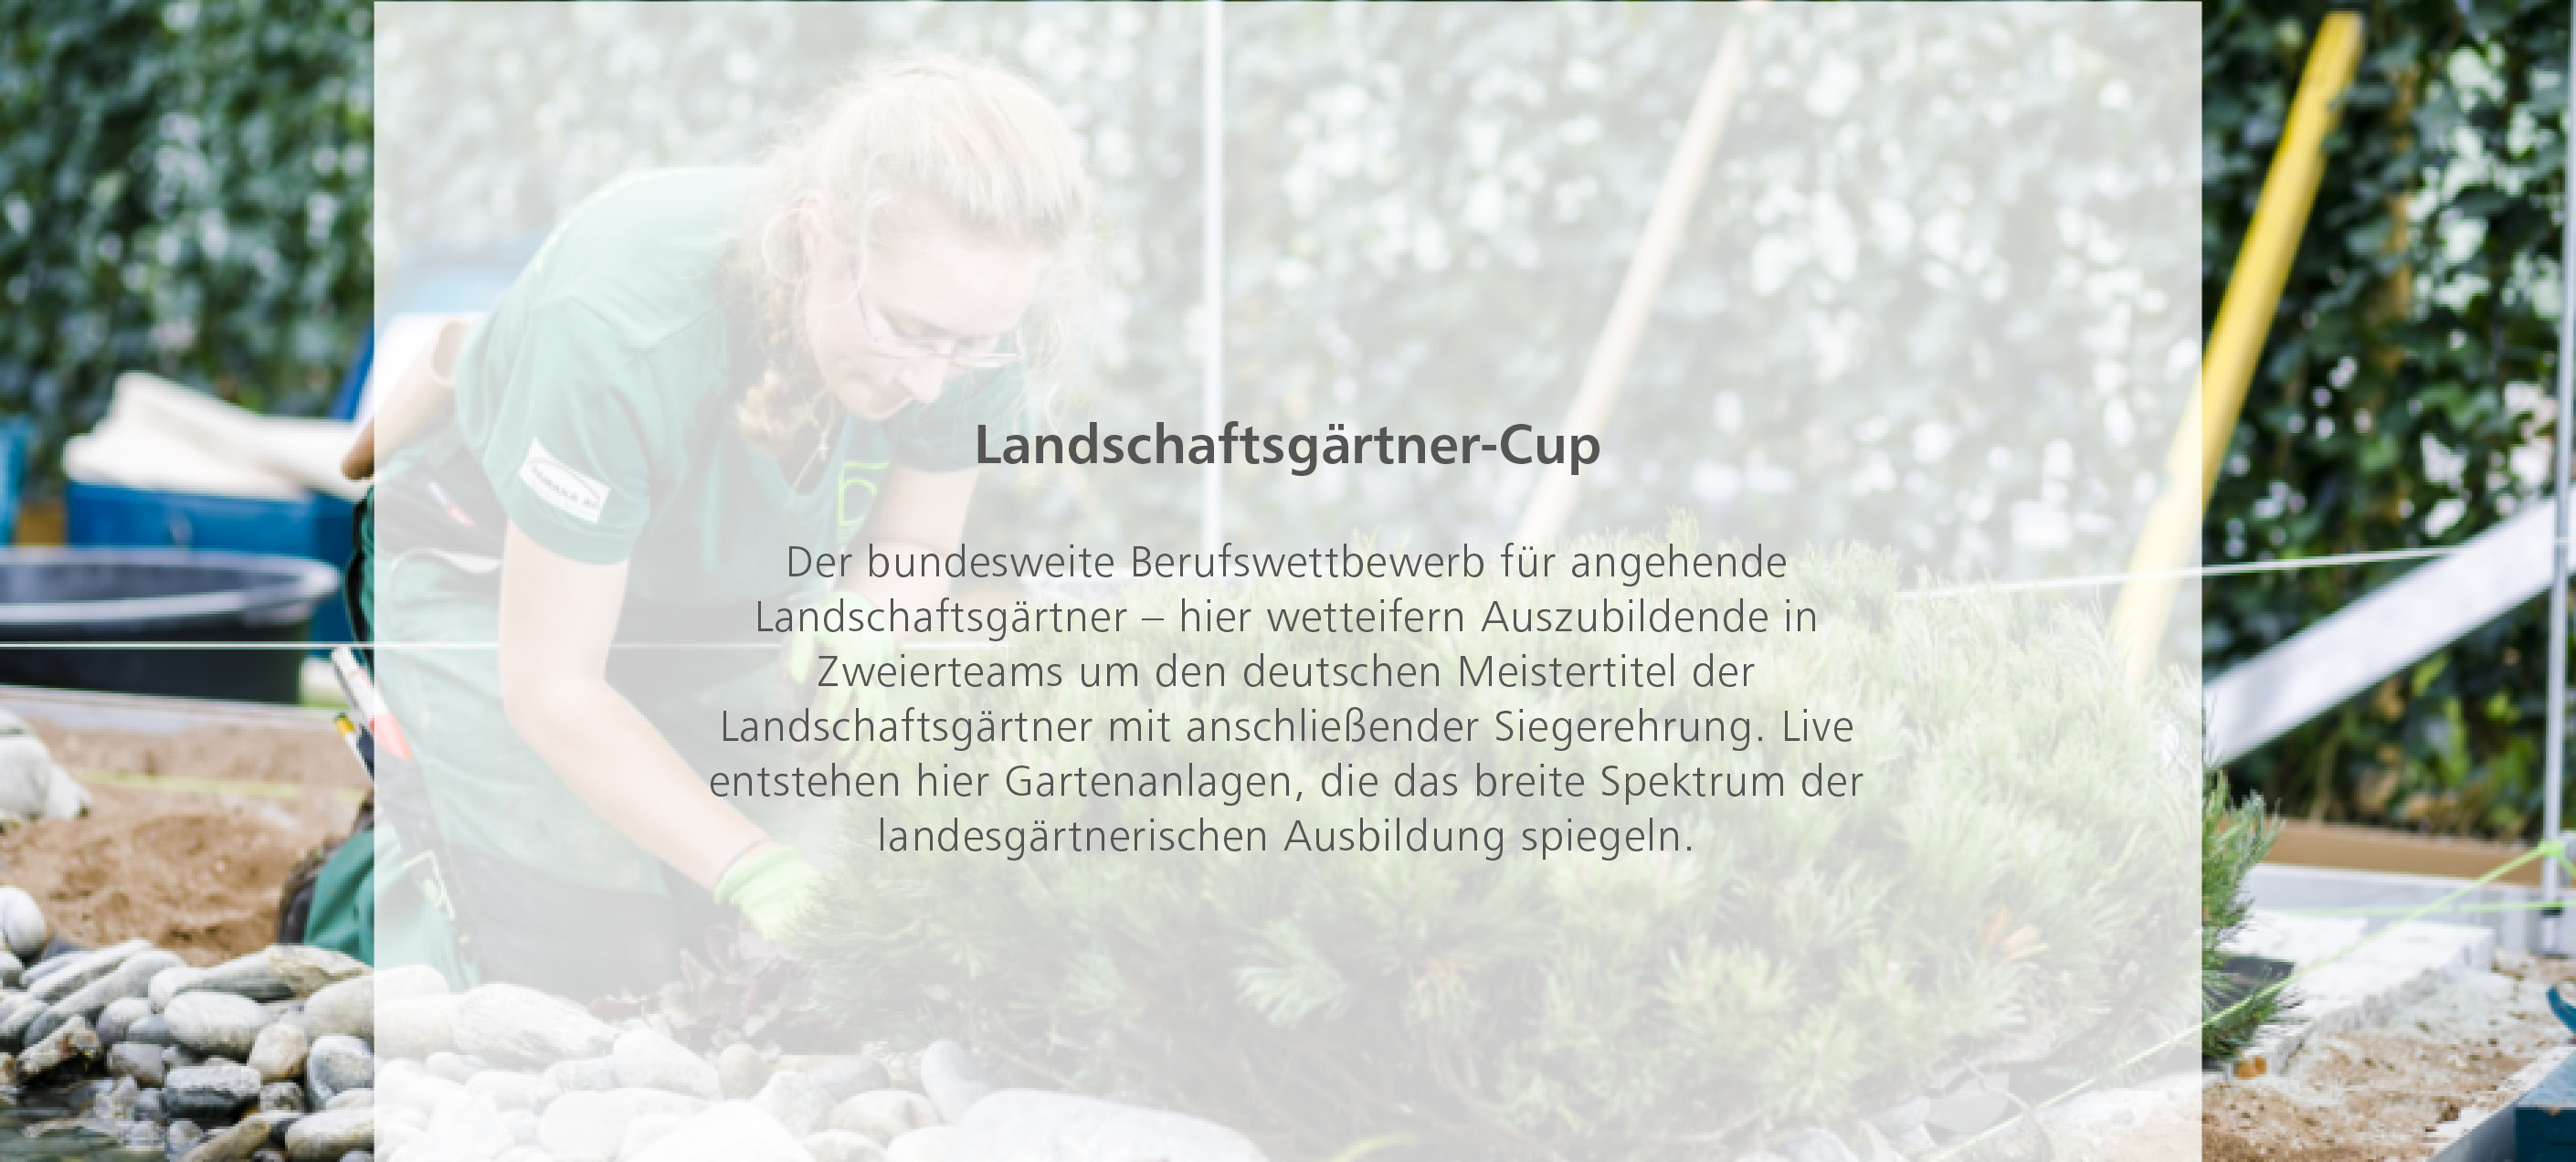 Landschaftsgärtner-Cup